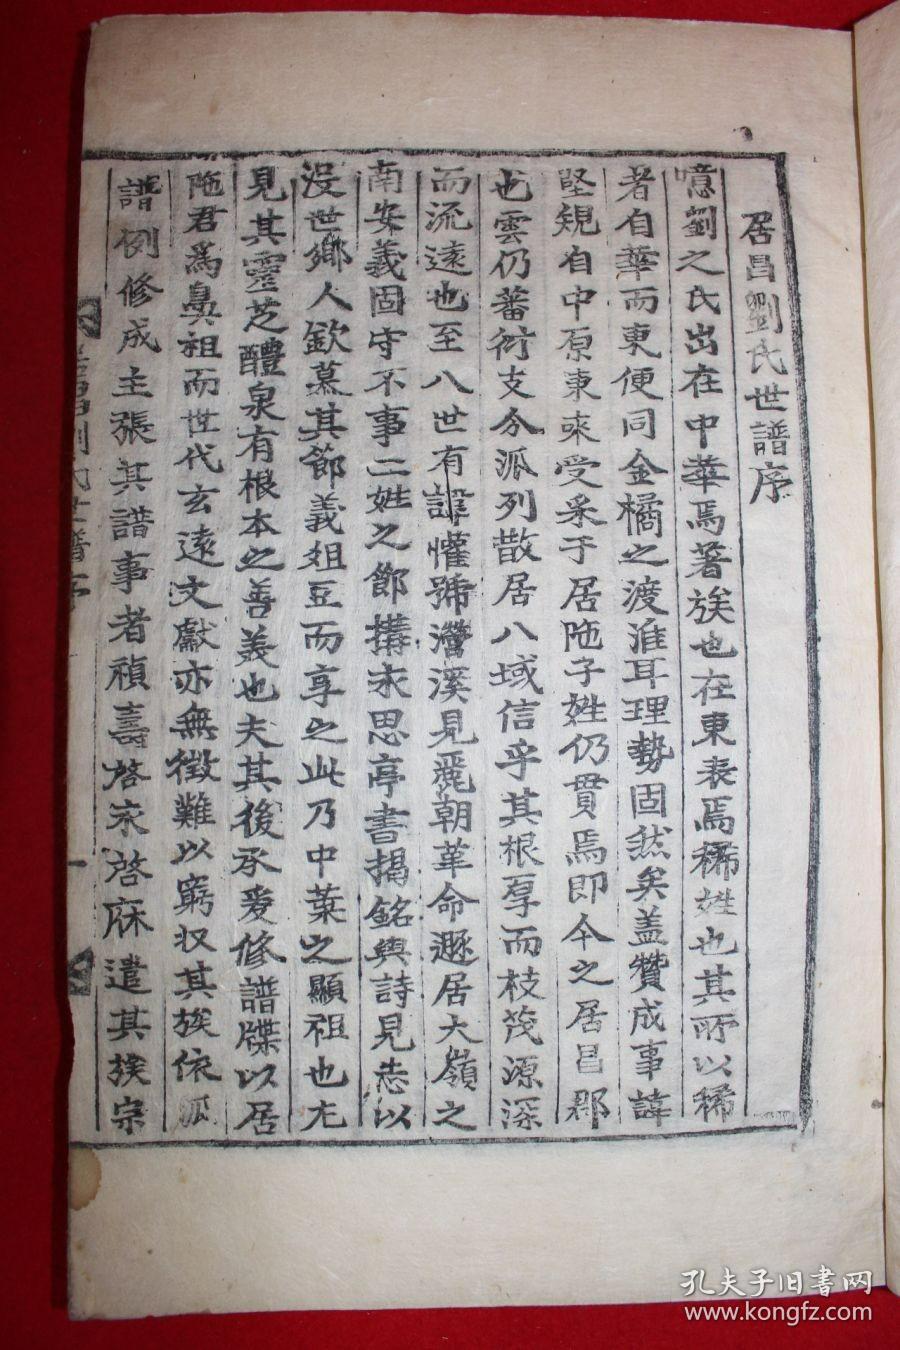 1911年(重光大渊献) 木活字本 《居昌刘氏世谱》 全套7卷5册